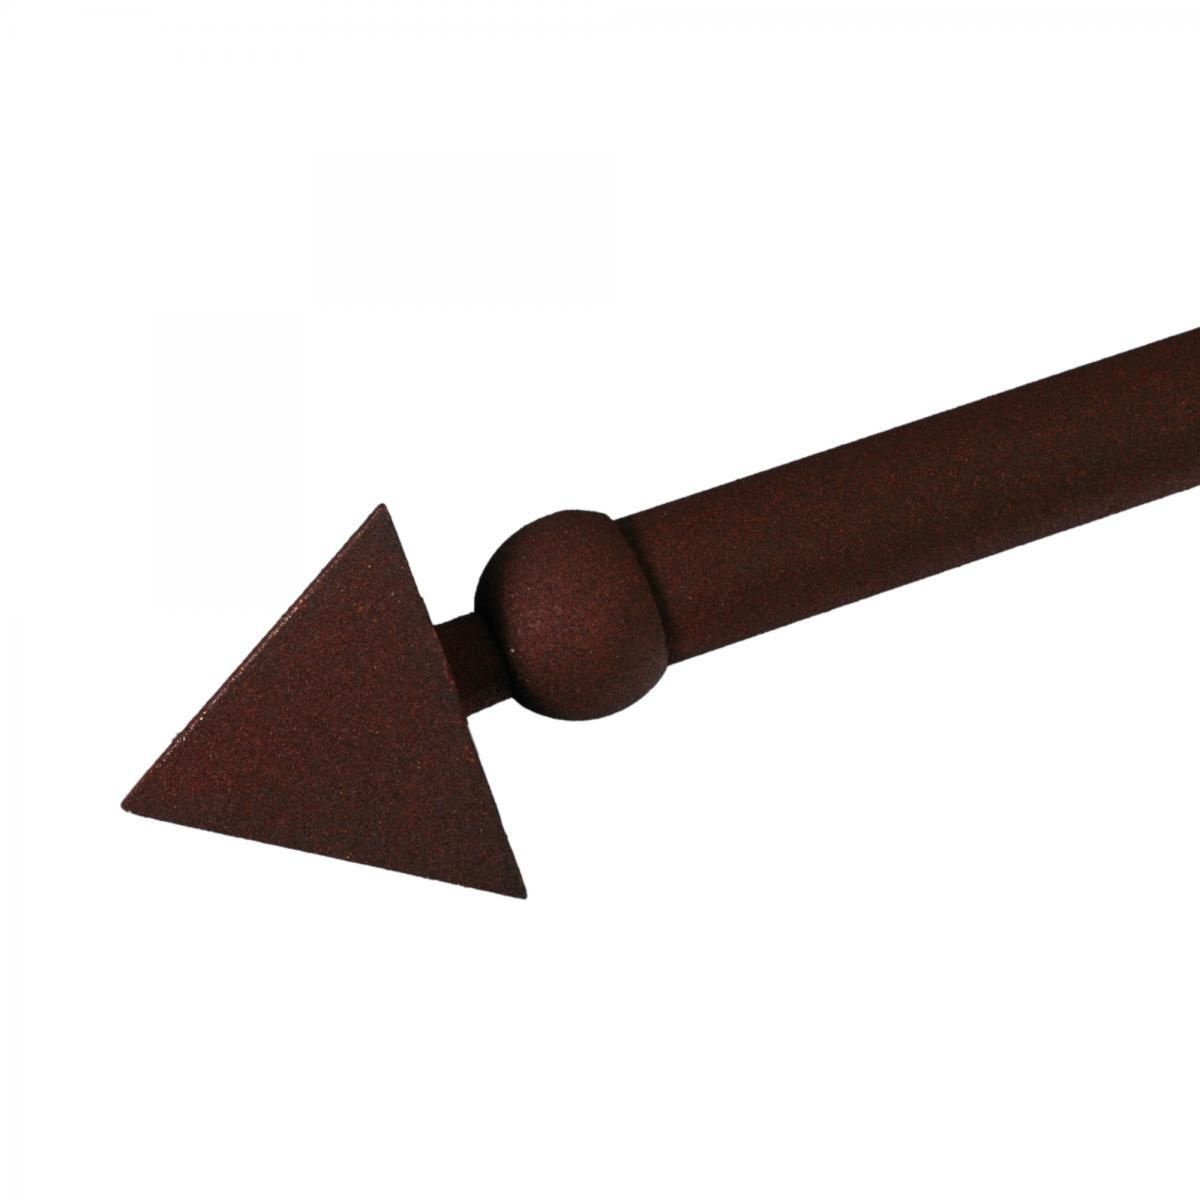 Endstück Spear für Gardinenstangen ø 20 mm, rost, 1 Stück